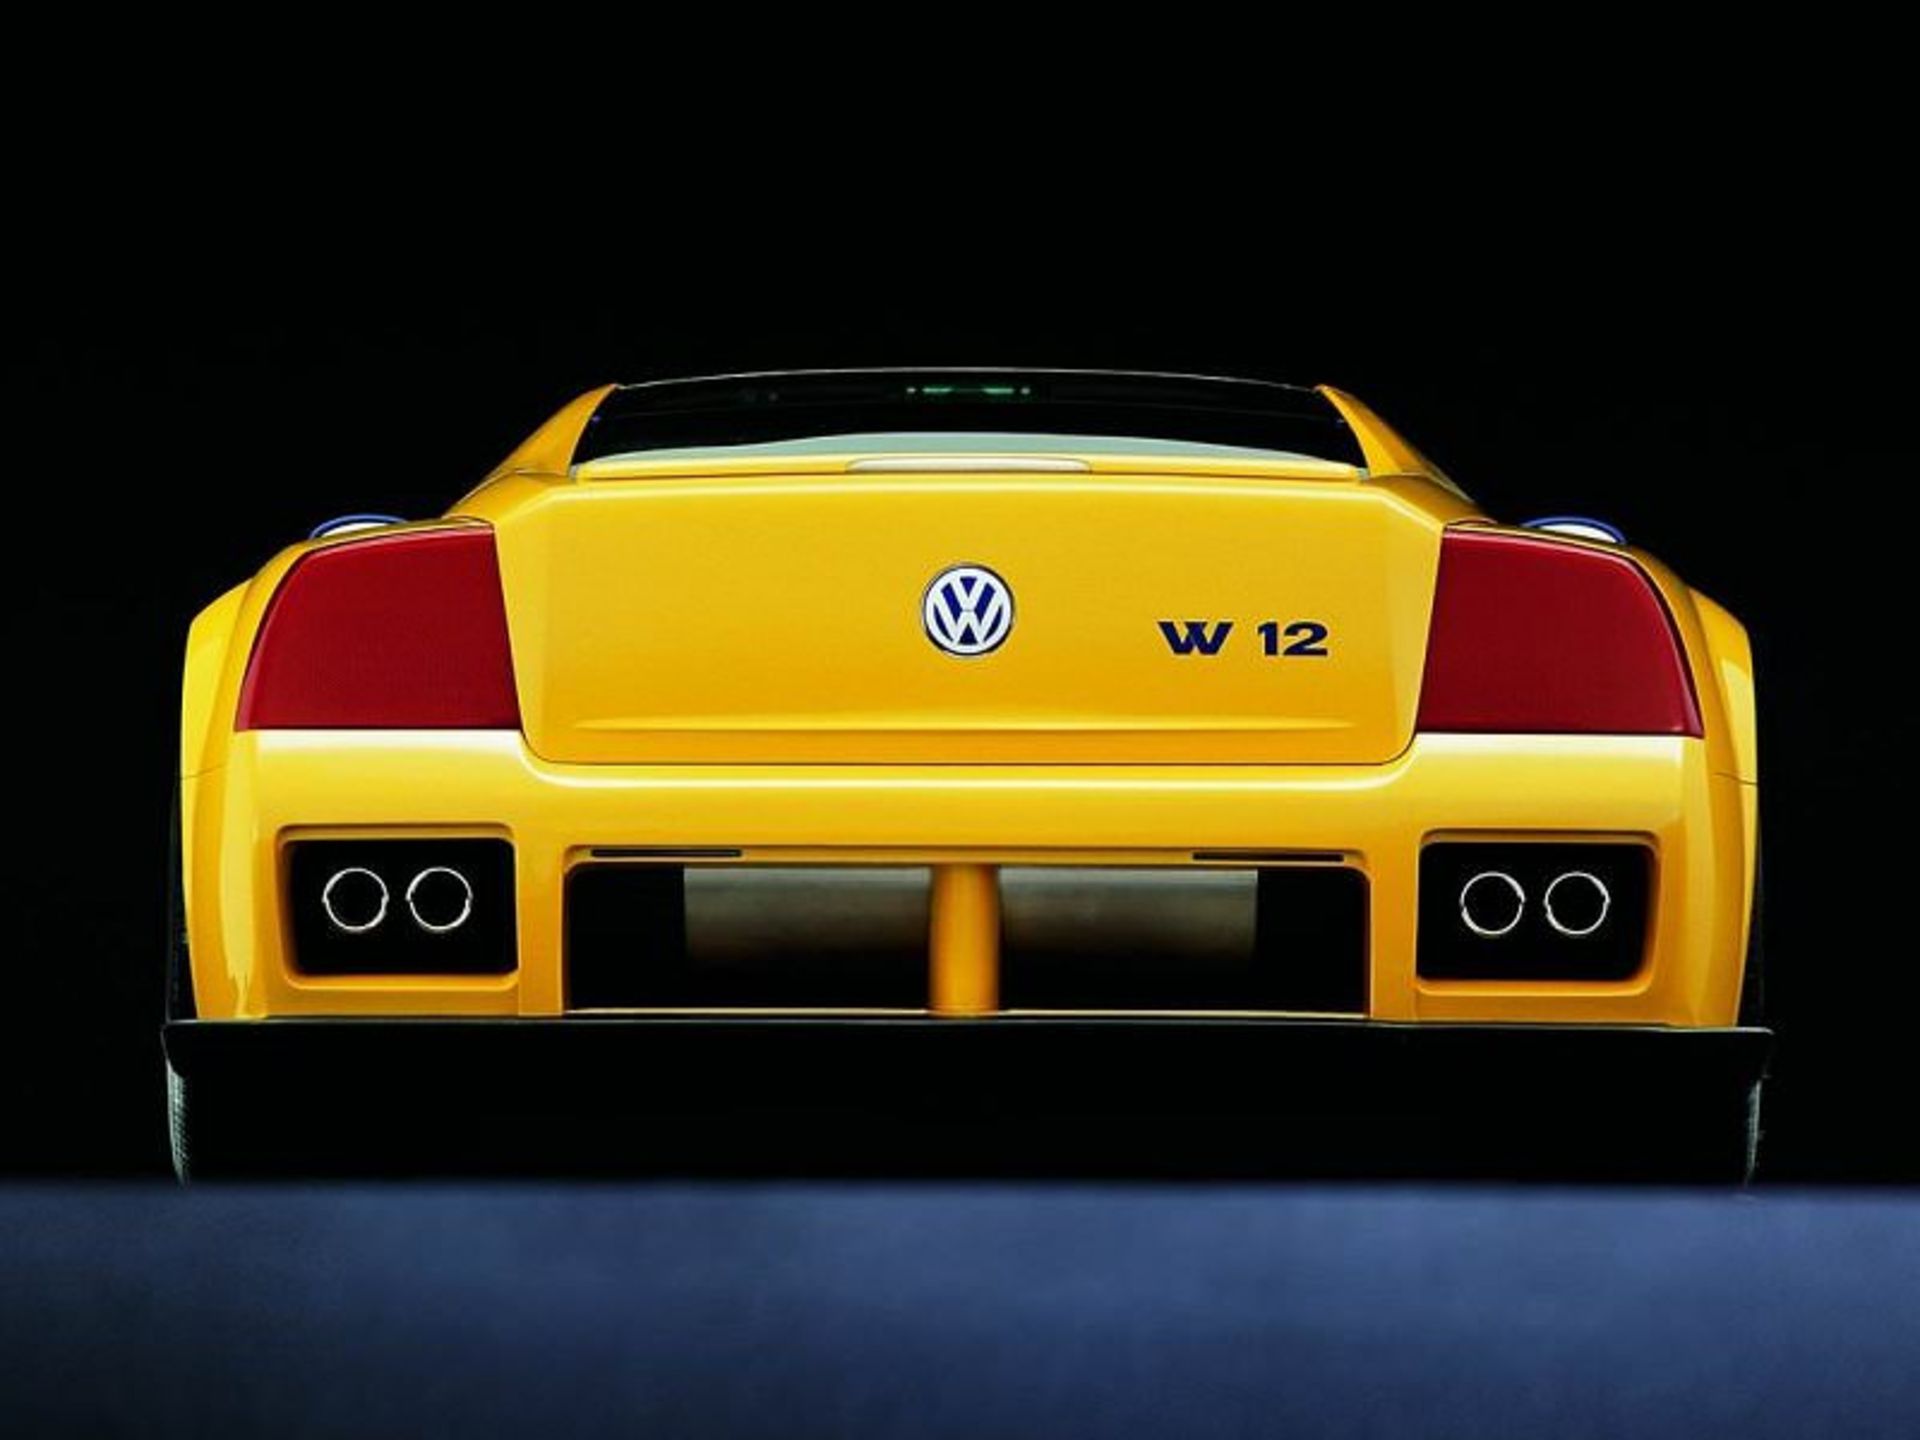 فولکس واگن / Volkswagen W12